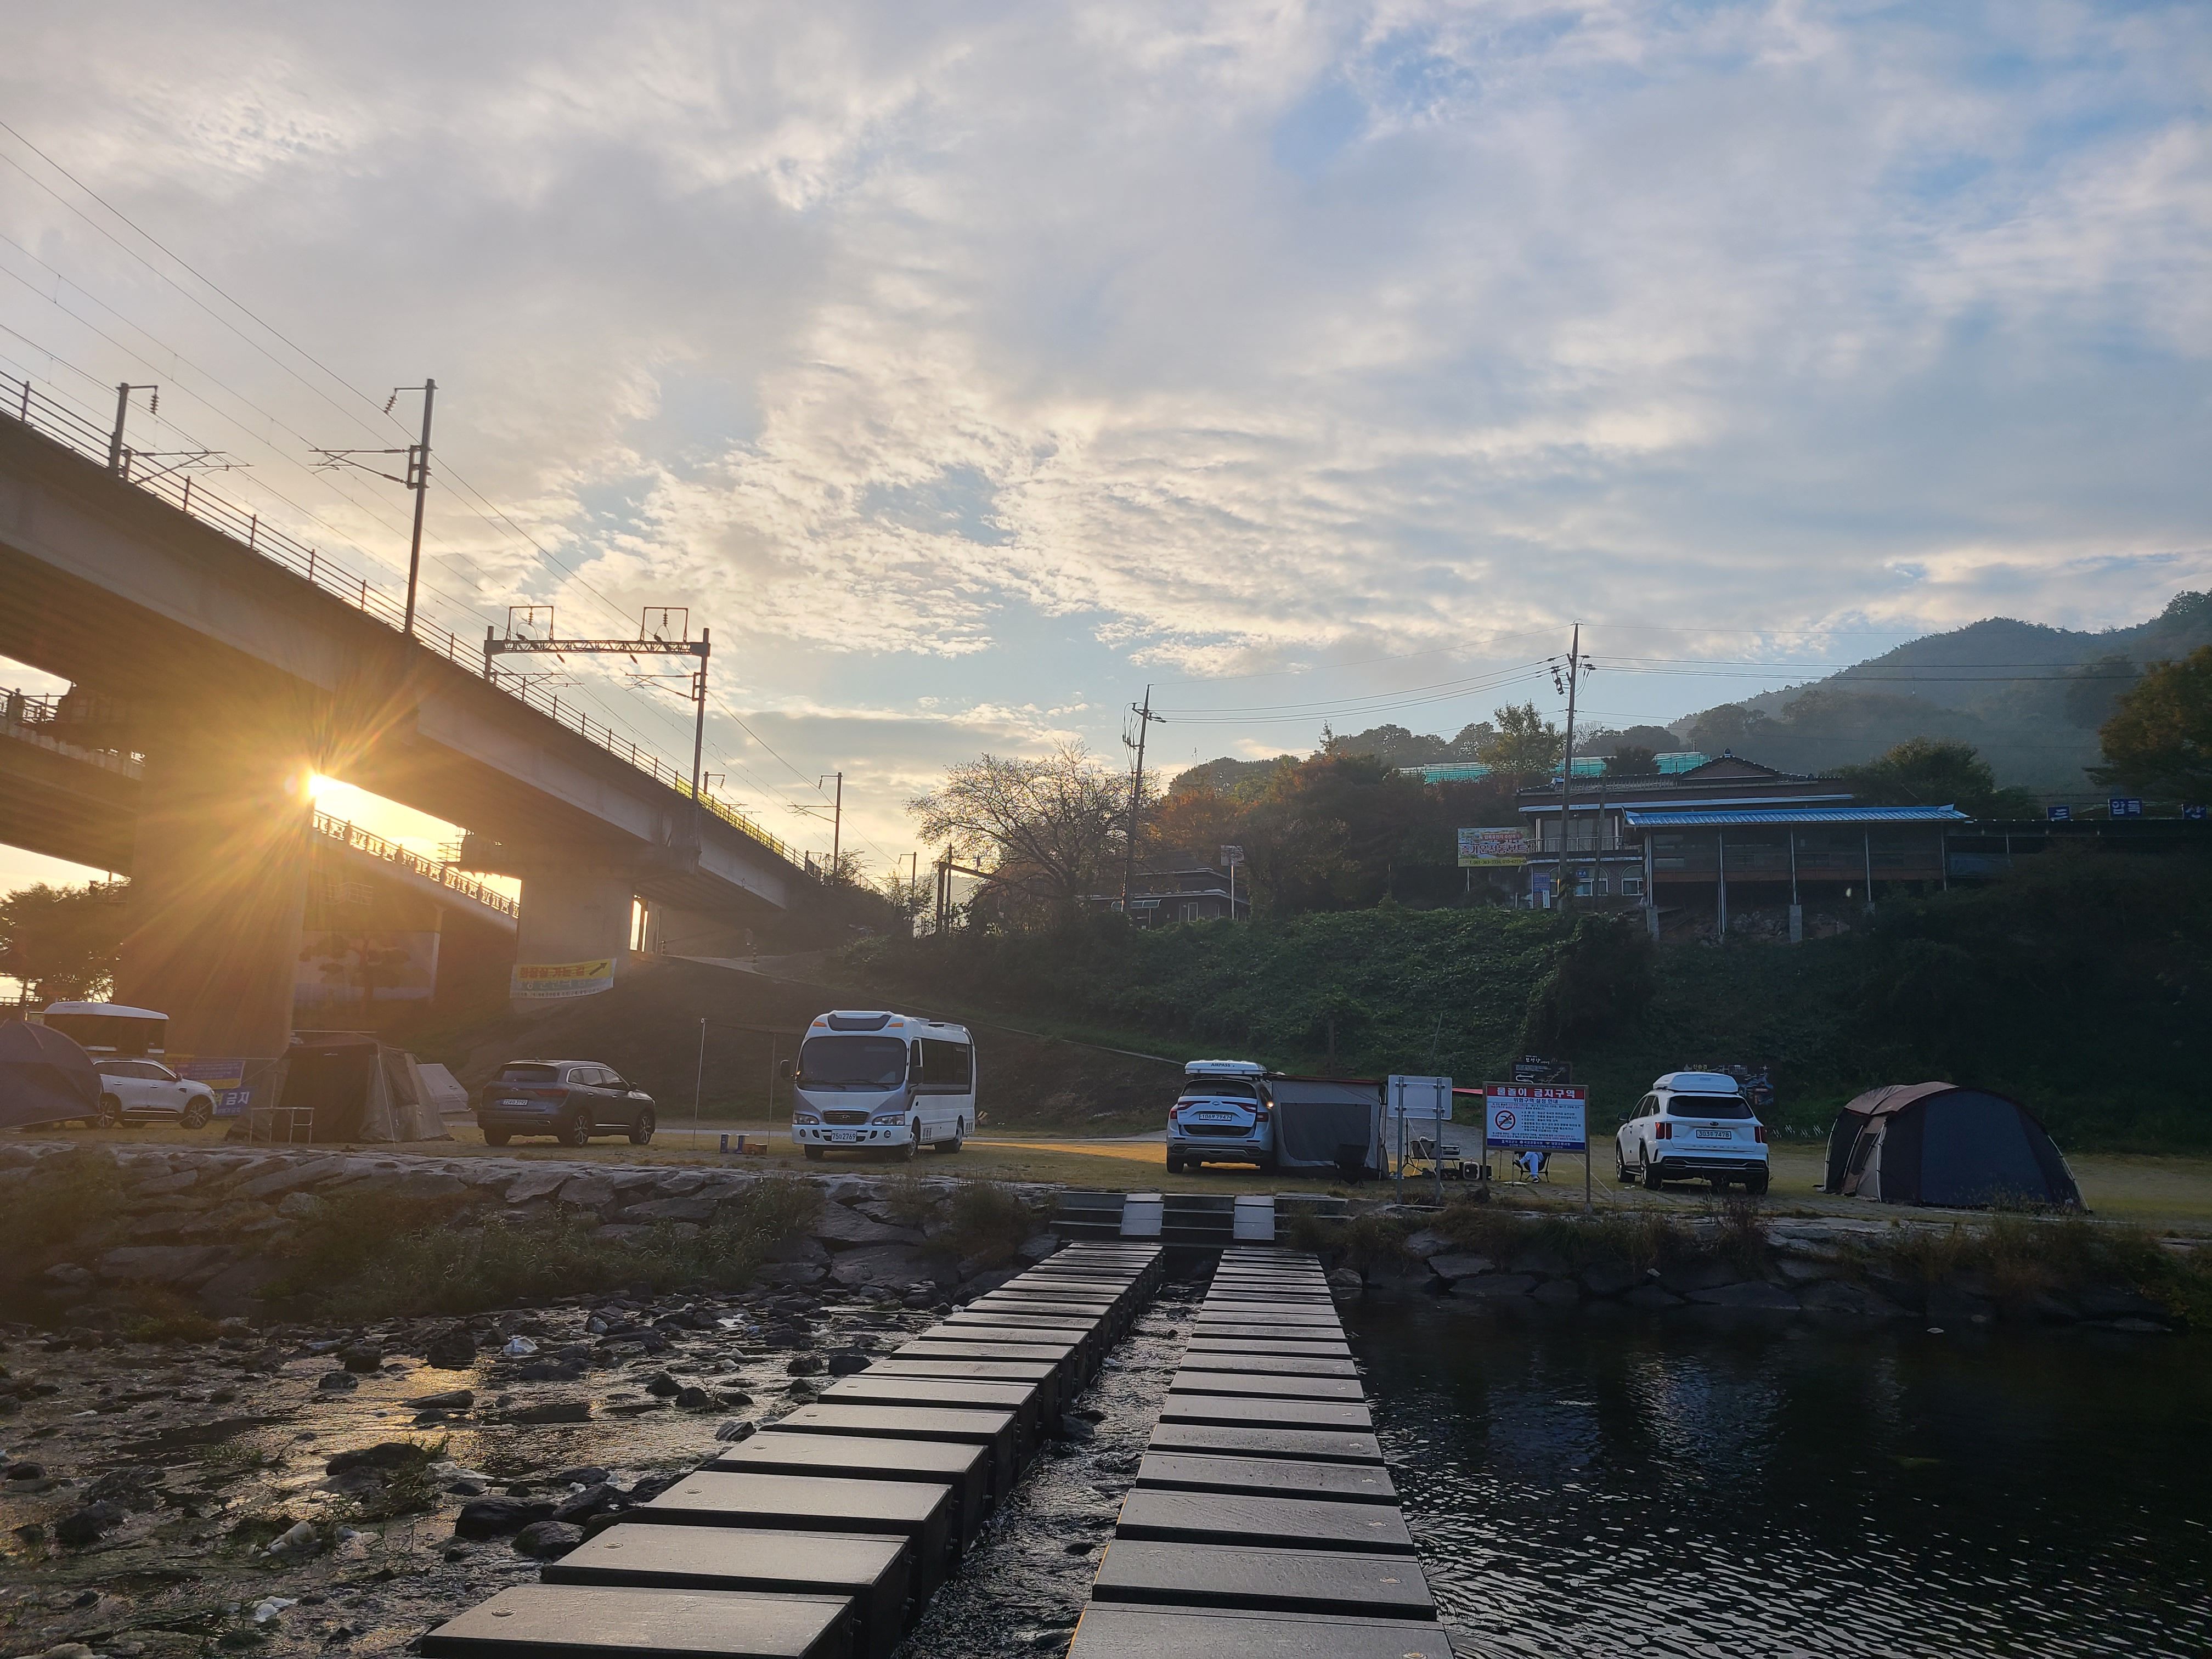 평화로운 압록유원지 오토캠핑장 아침풍경2